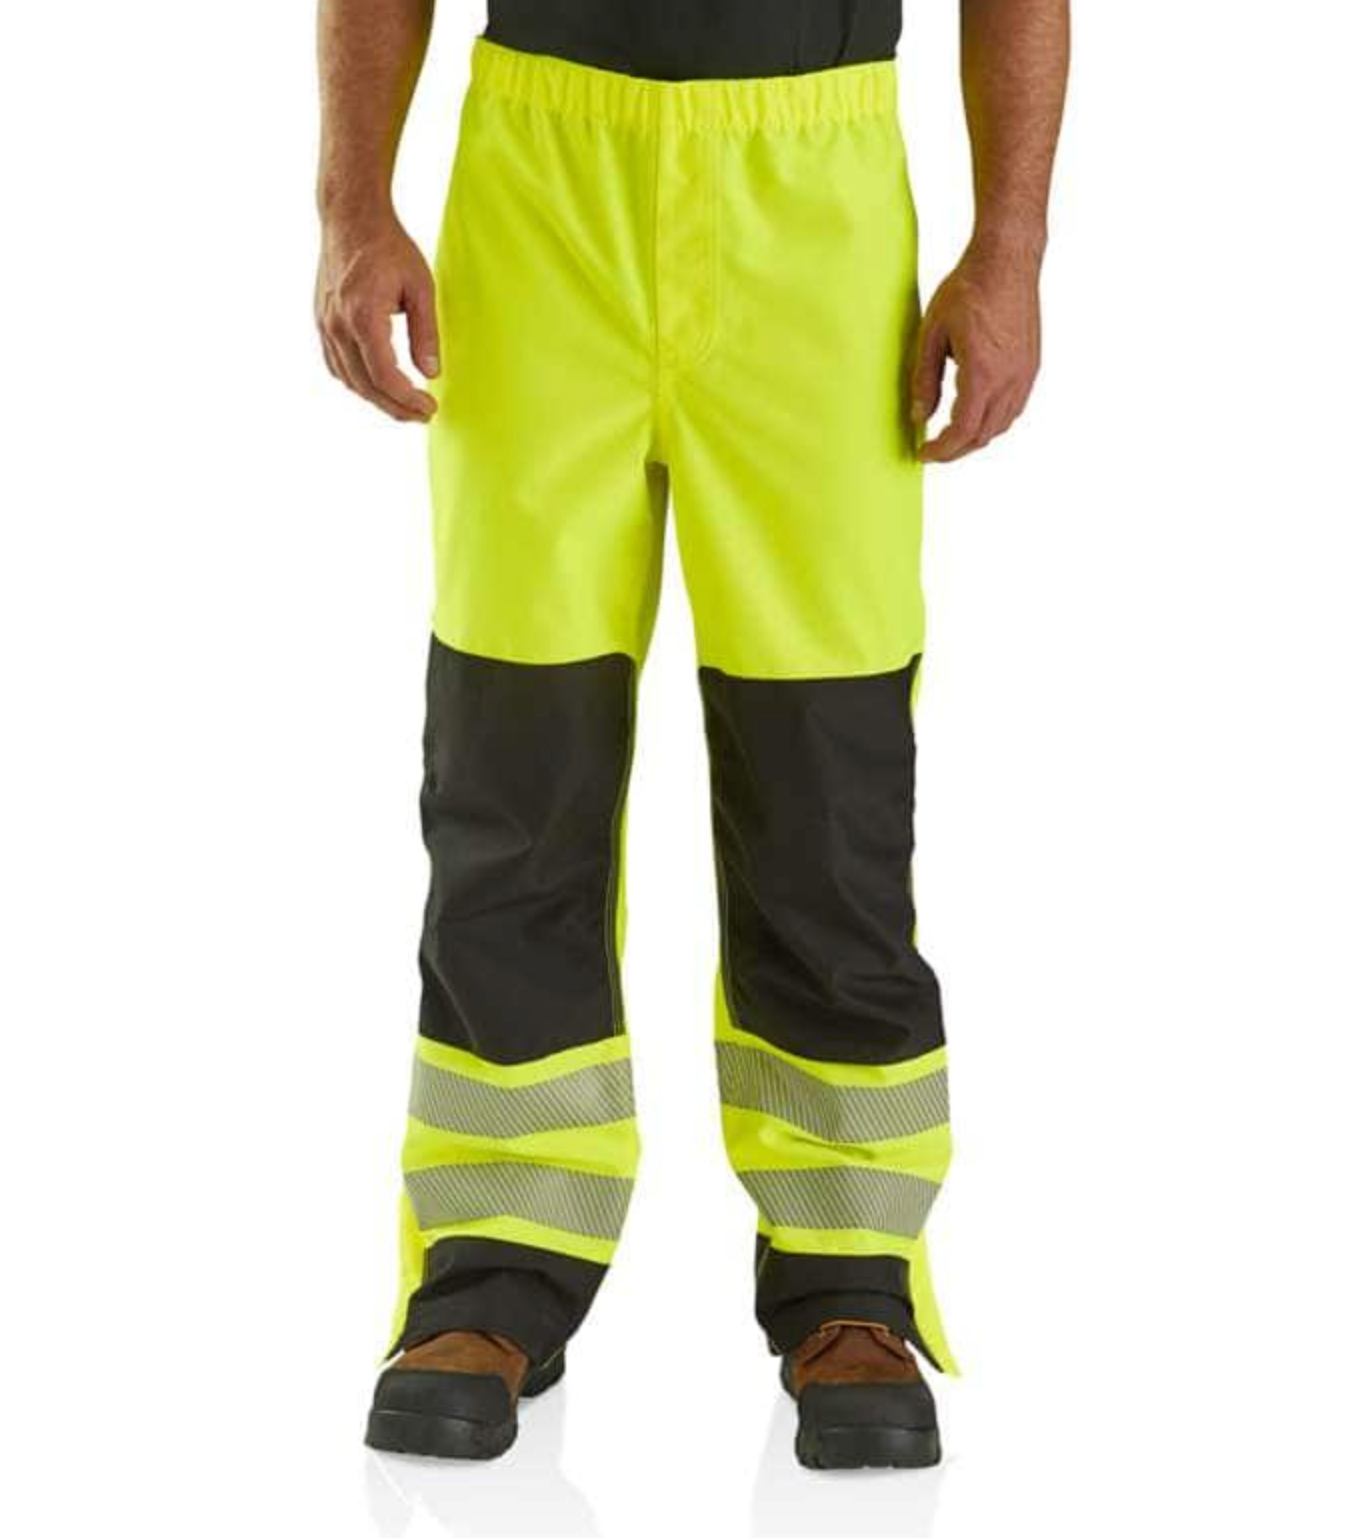 Carhartt Men's Hi-Vis Class E Waterproof Pant - Work World - Workwear, Work Boots, Safety Gear